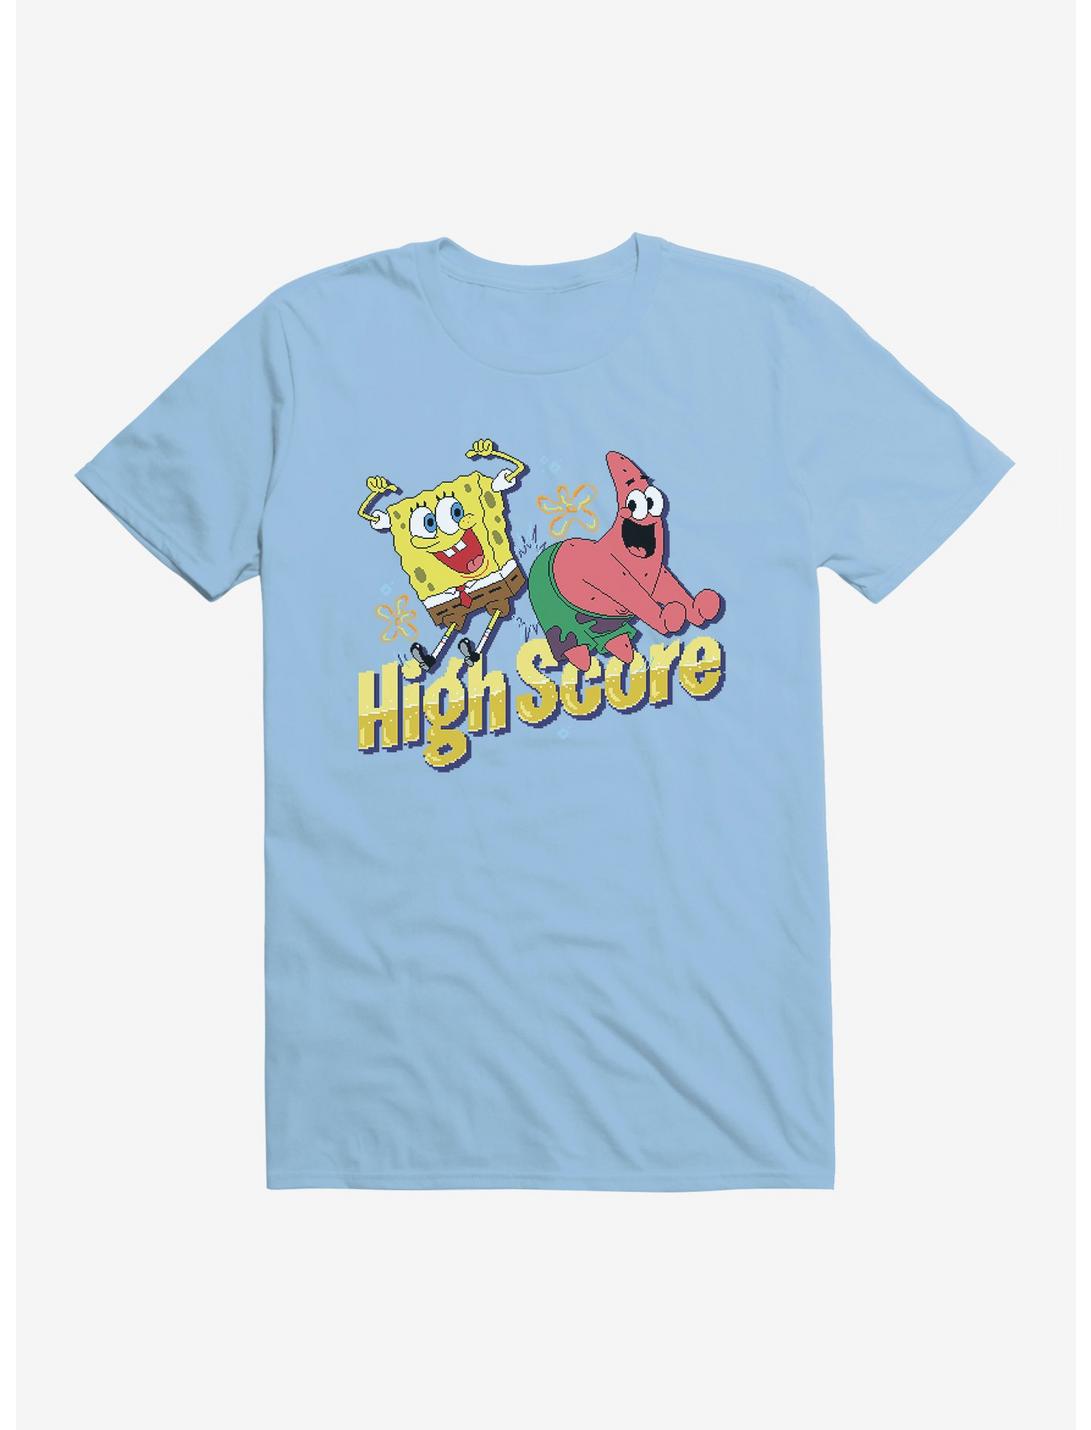 SpongeBob SquarePants High Score T-Shirt, , hi-res